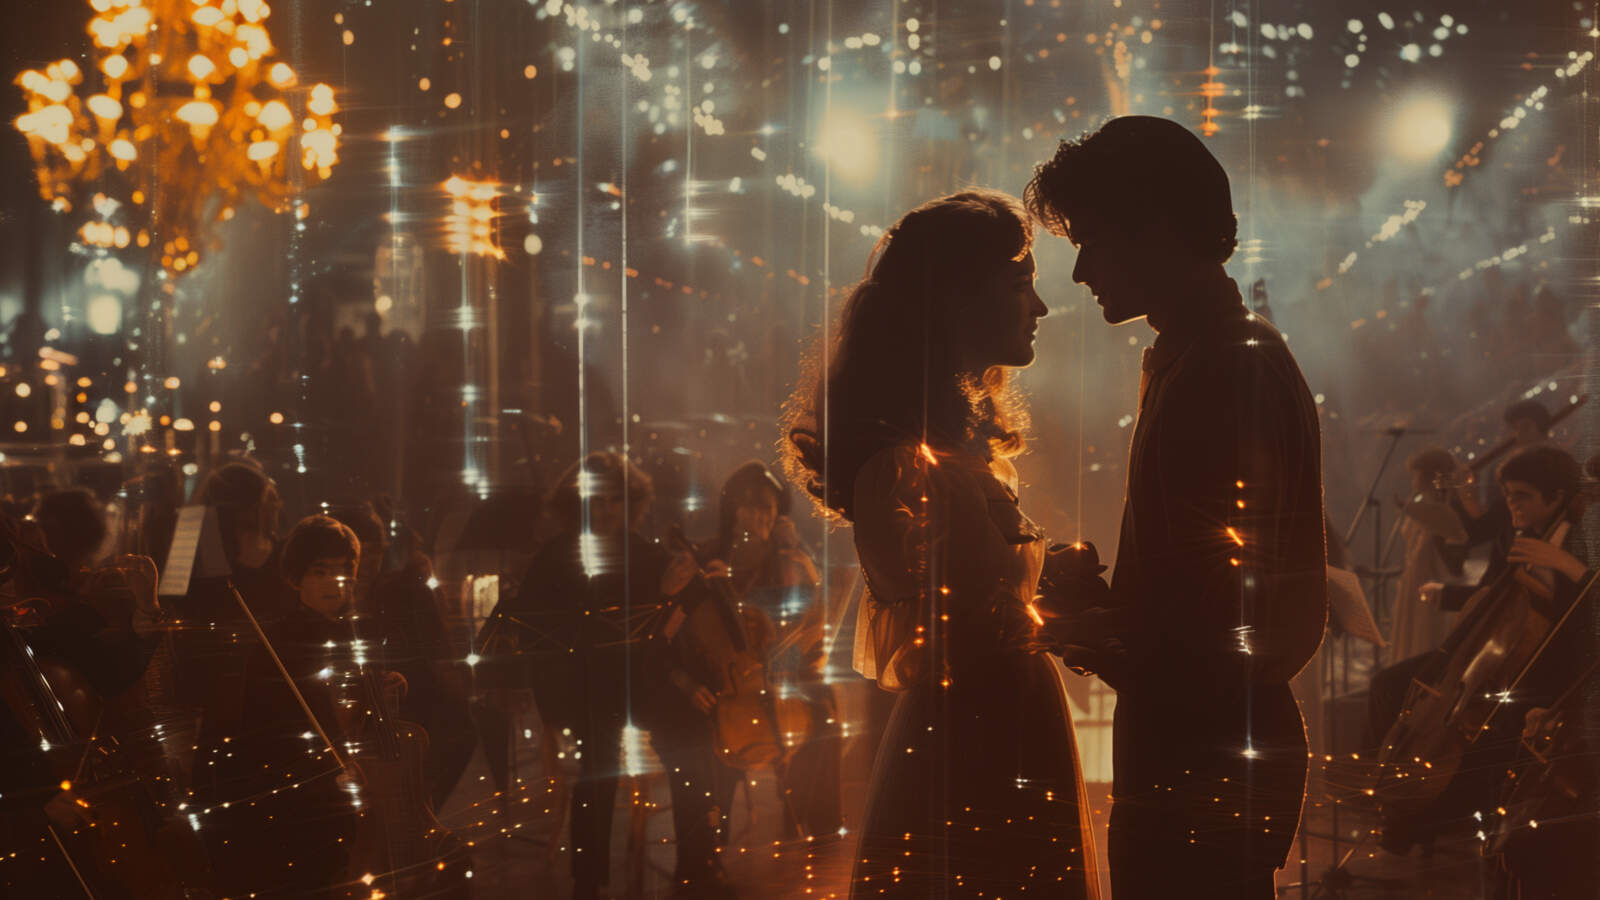 Ett ungt par står mot varandra, i silhuett mot varmt, glittrande ljus. I bakgrunden syns en ljukrona och flera stråkmusiker.